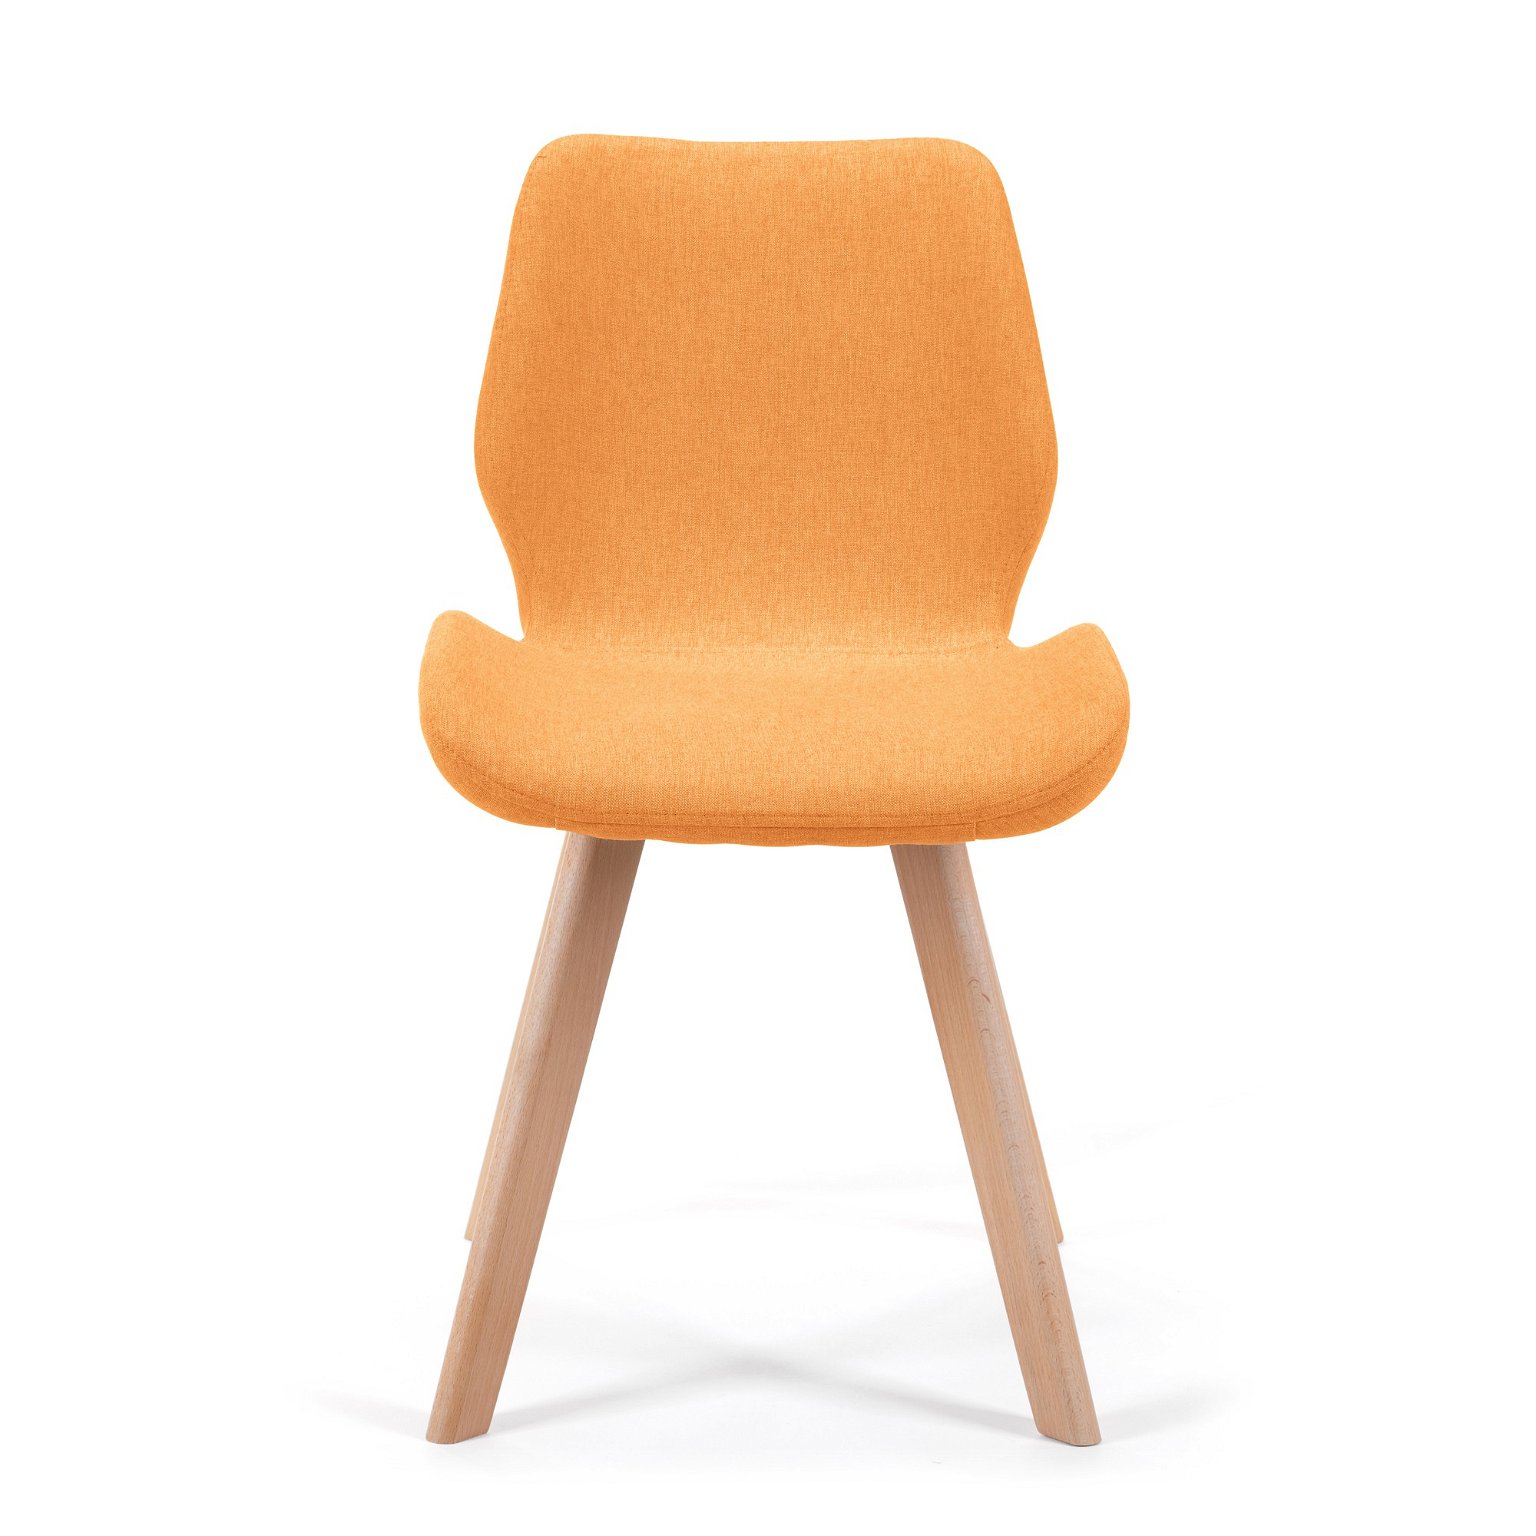 4-rių kėdžių komplektas SJ.0159, oranžinis - 4